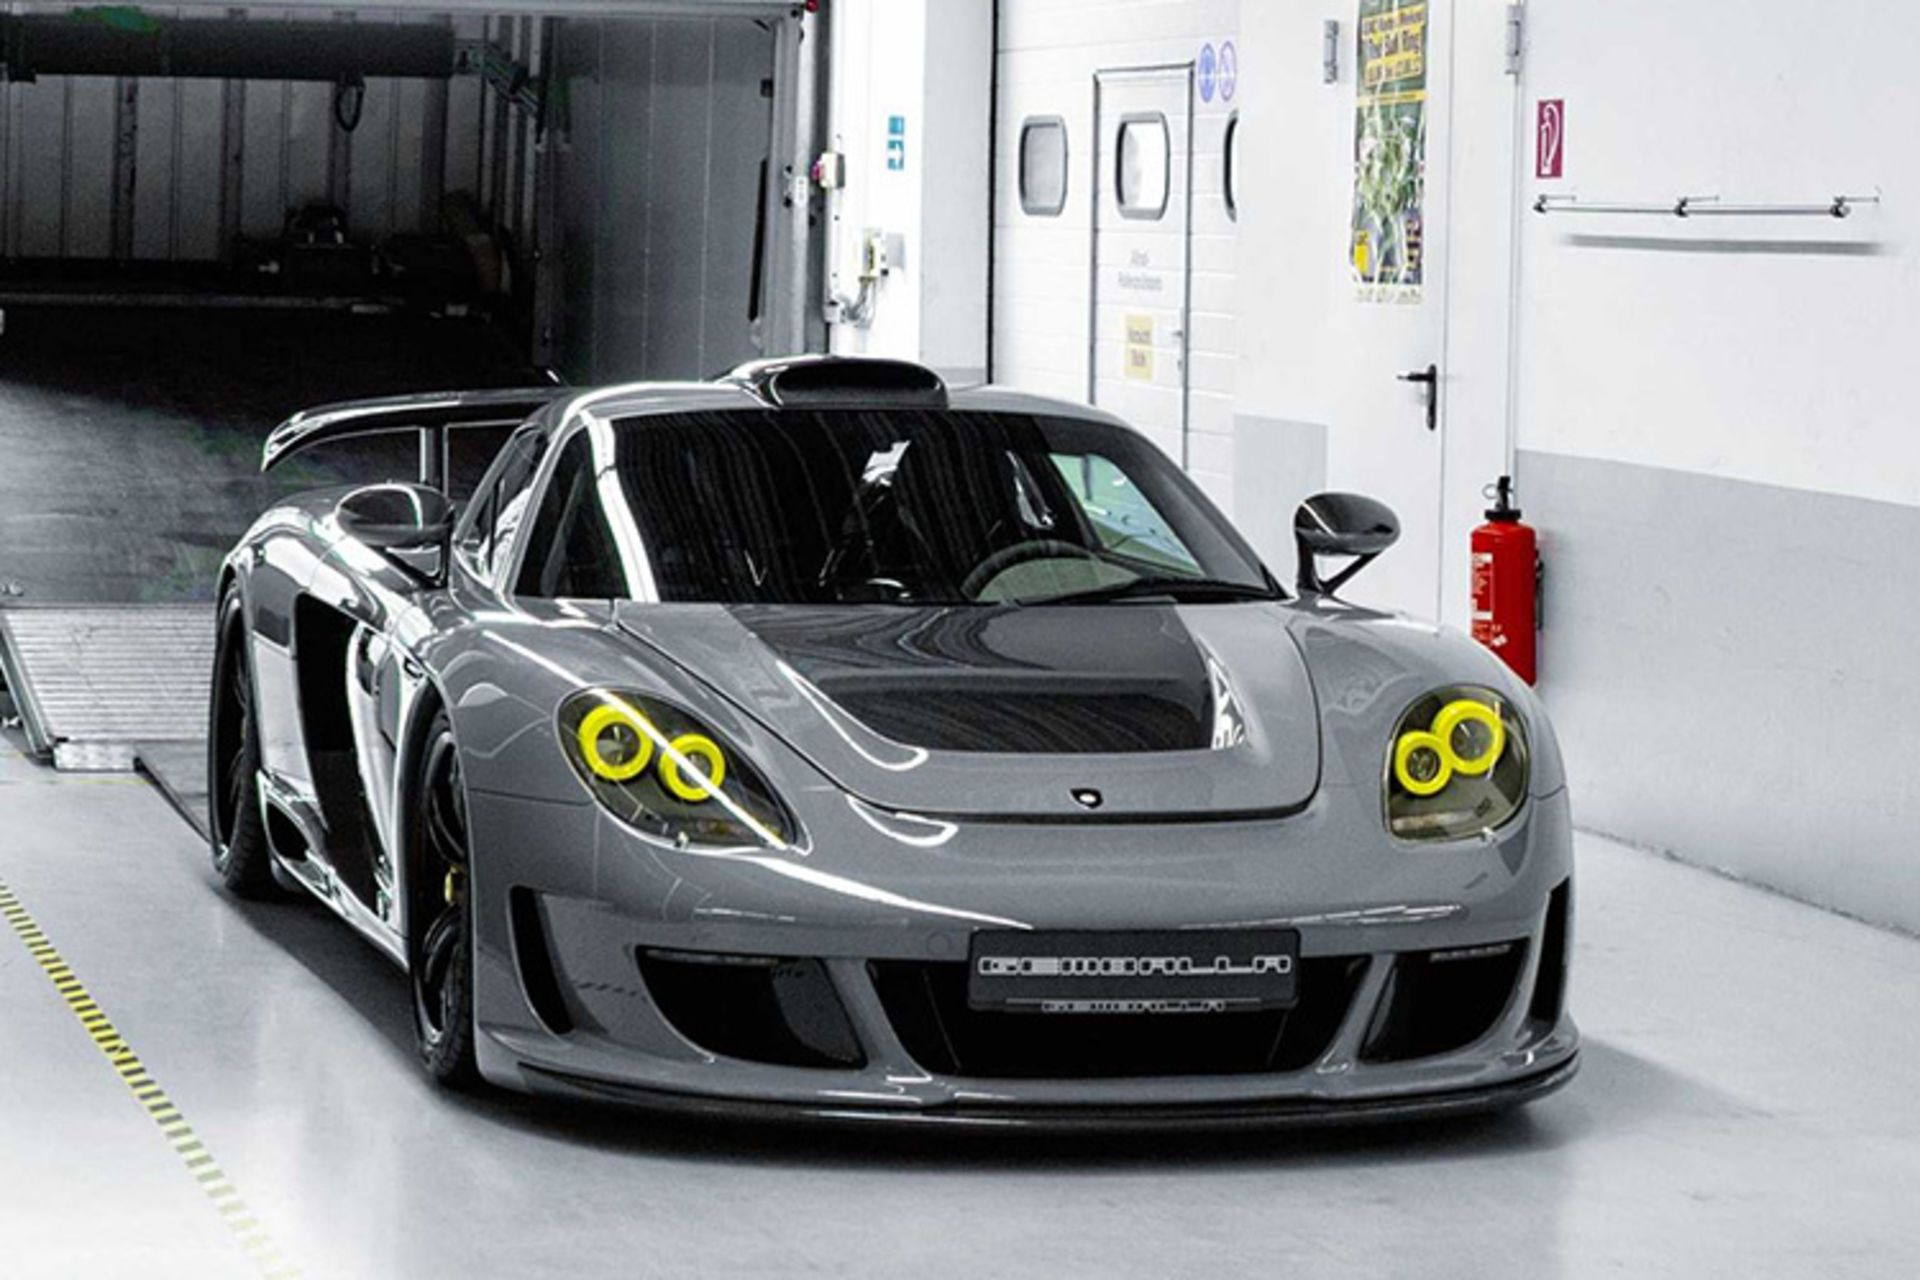 پورشه کررا GT گمبالا / Gemballa Porsche Carrera GT